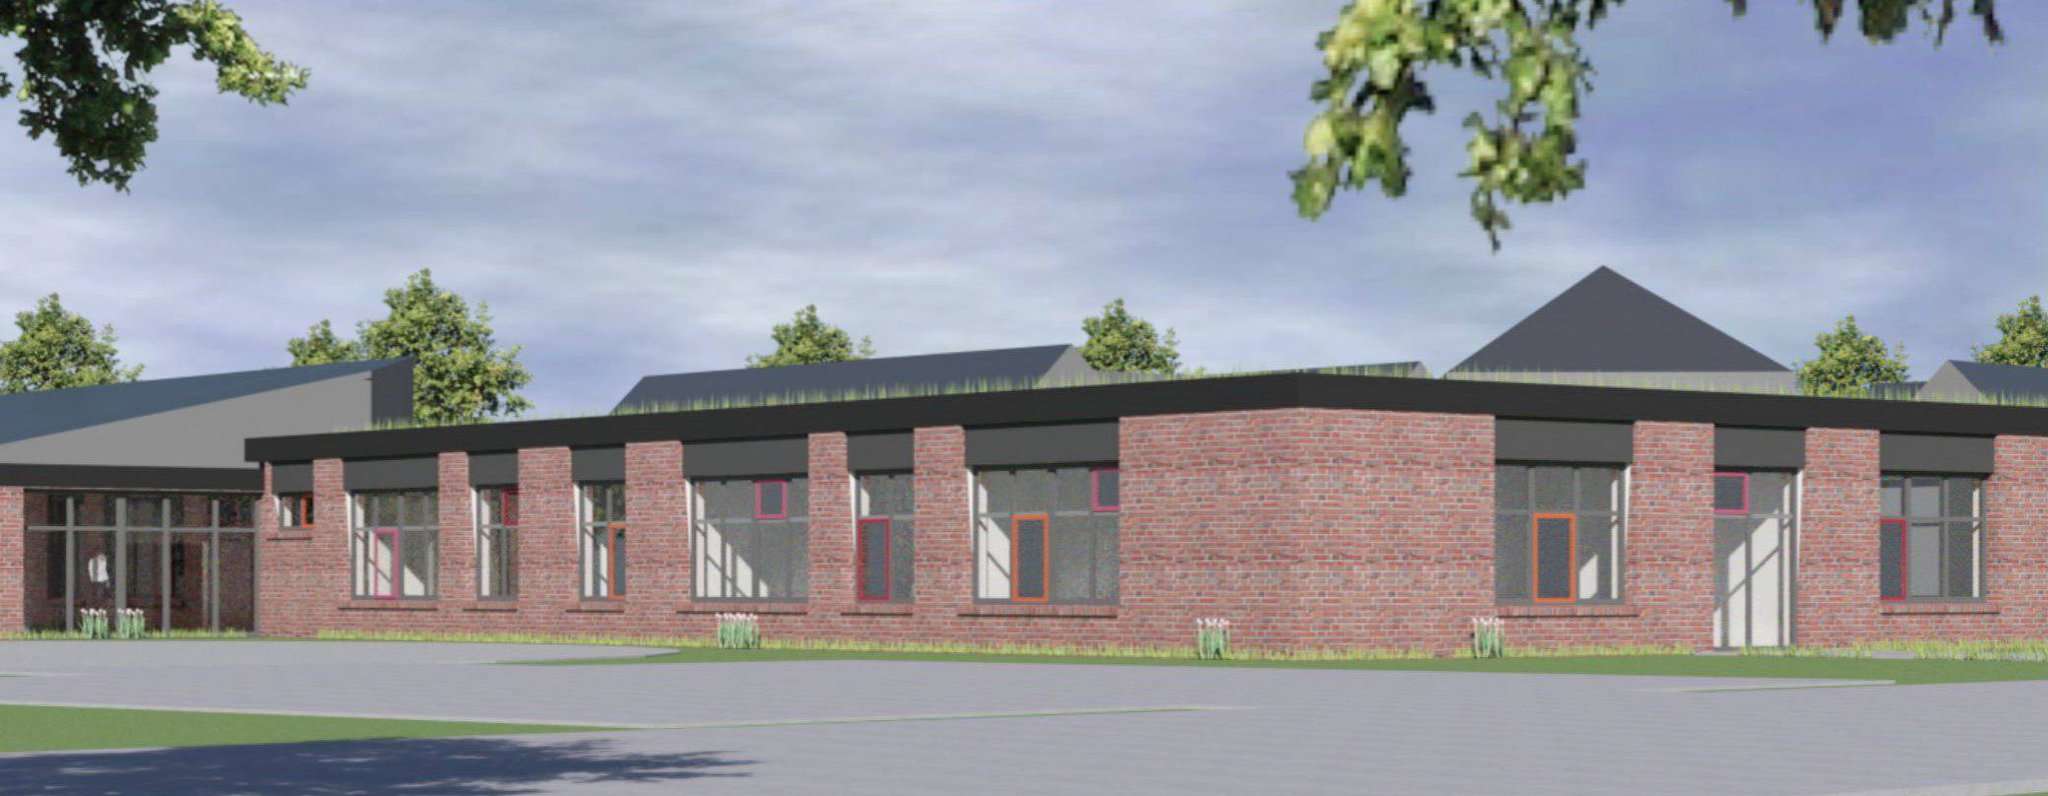 Der geplante Anbau an der Sittenser Grundschule aus Nordost-Perspektive. Animation: Schulze Architekten